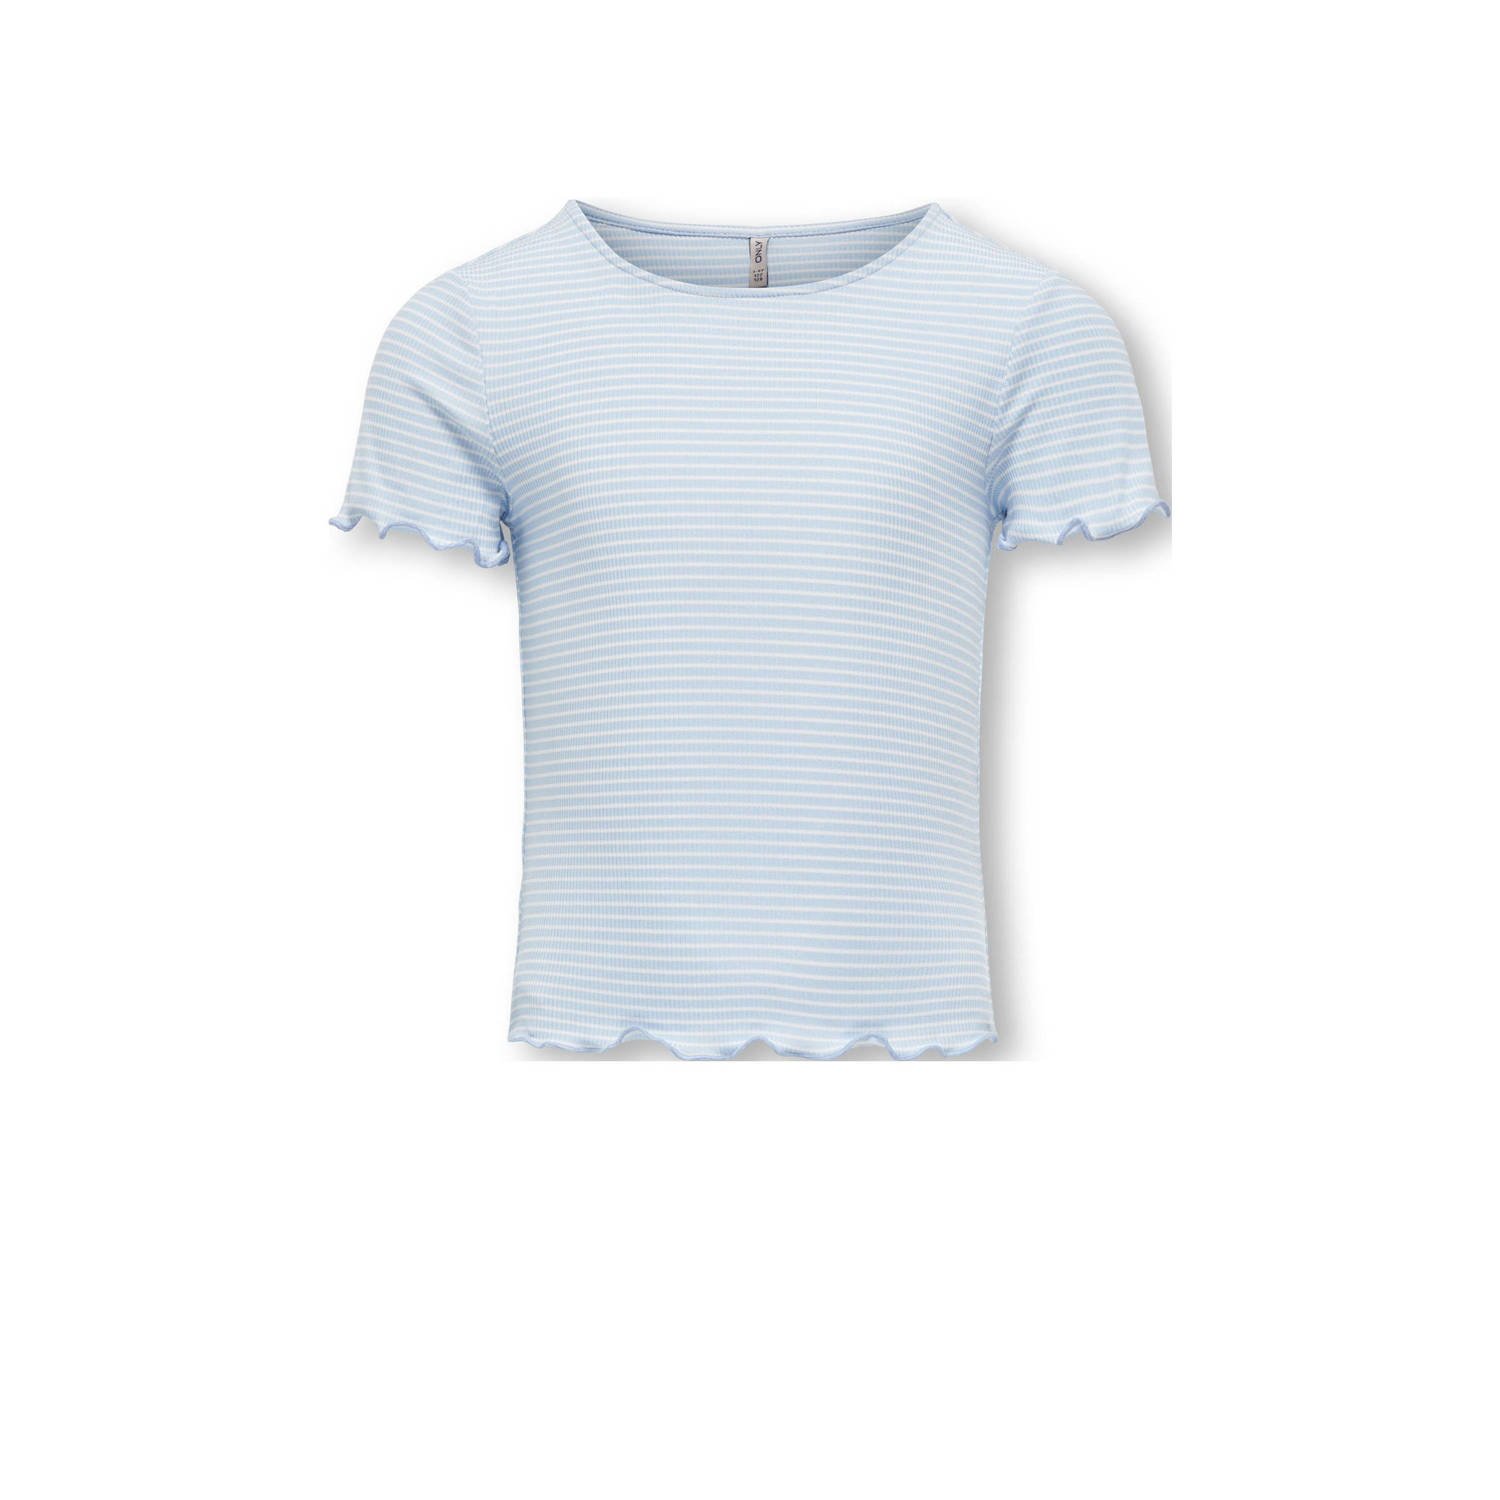 ONLY KIDS GIRL gestreept ribgebreid T-shirt KOGWILMA LIFE lichtblauw wit